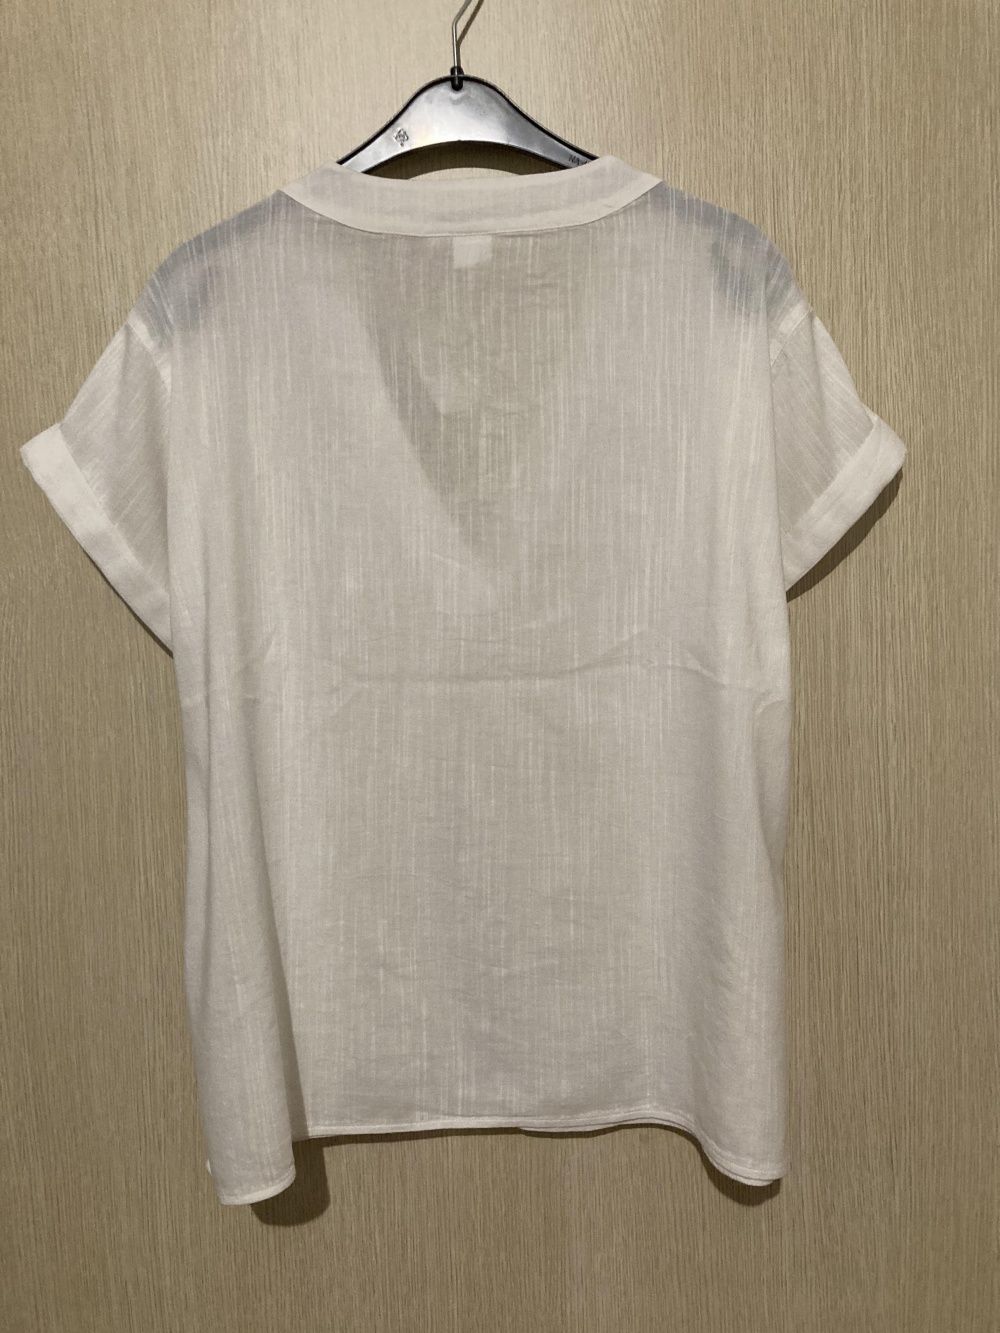 Блуза “ Gap ” M-XL размер